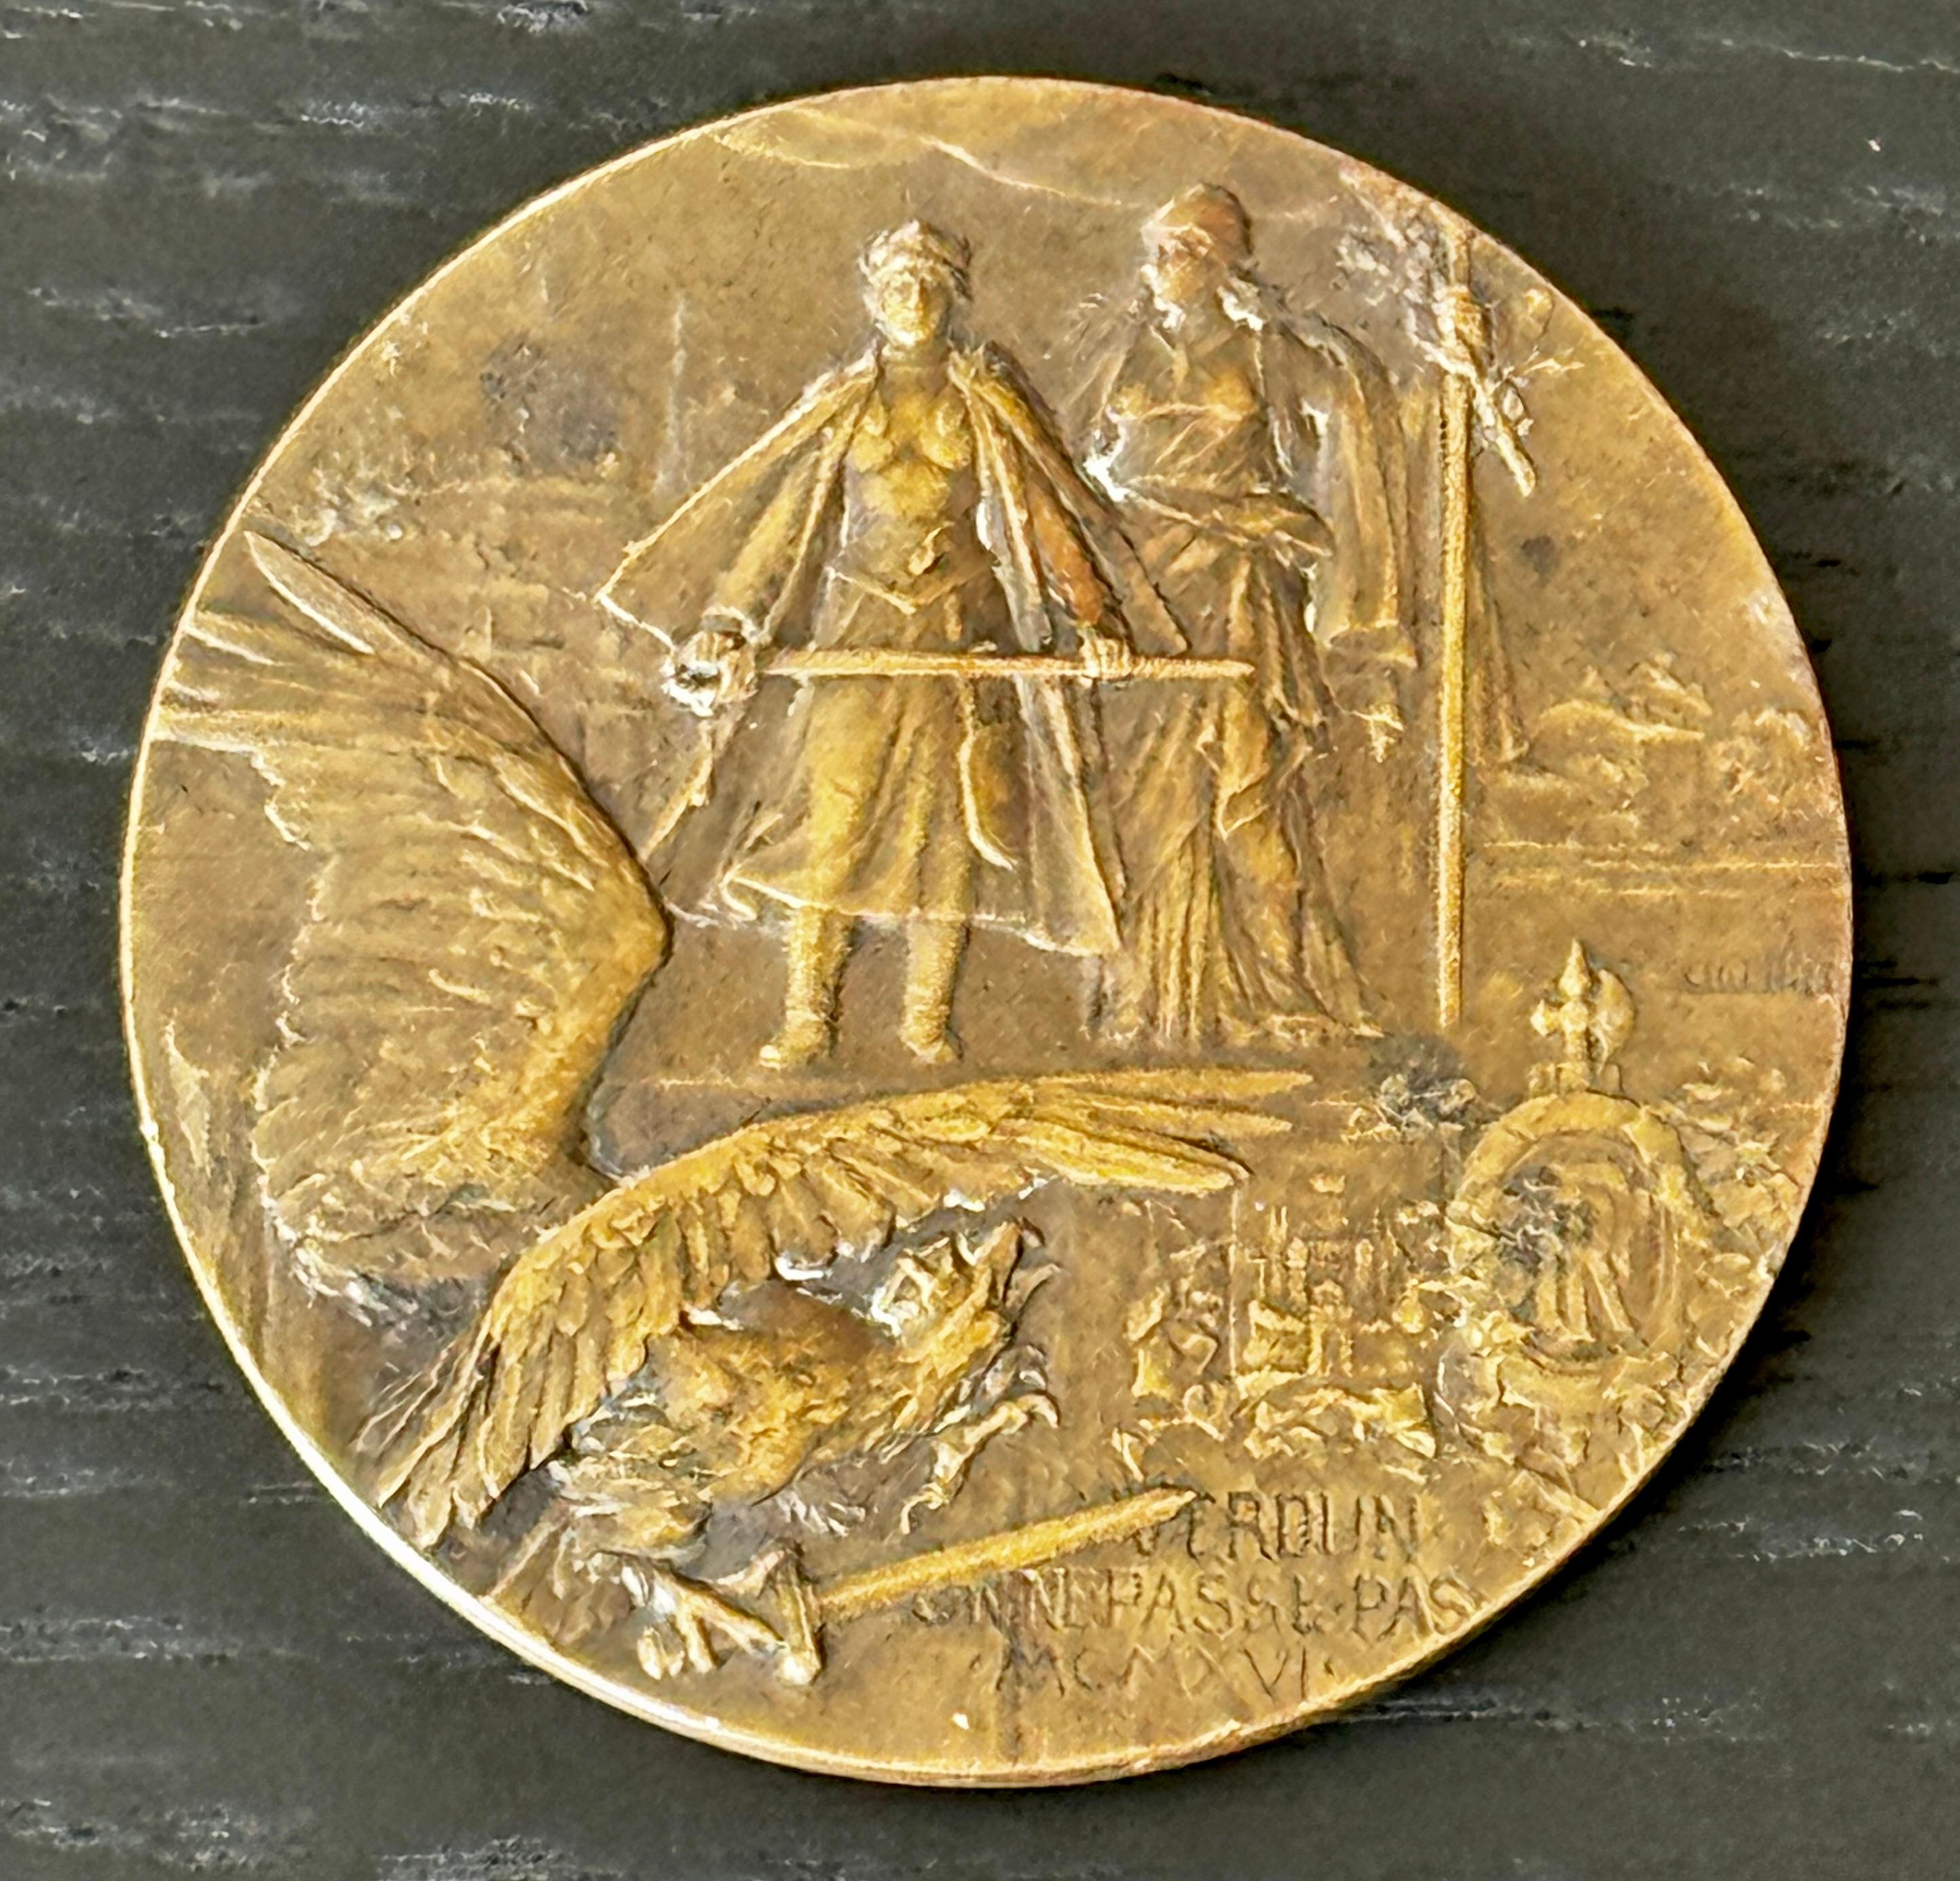 Un médaillon en bronze circa 1916 - Les héros de Verdun Signé par le sculpteur Charles Pillet

2.75